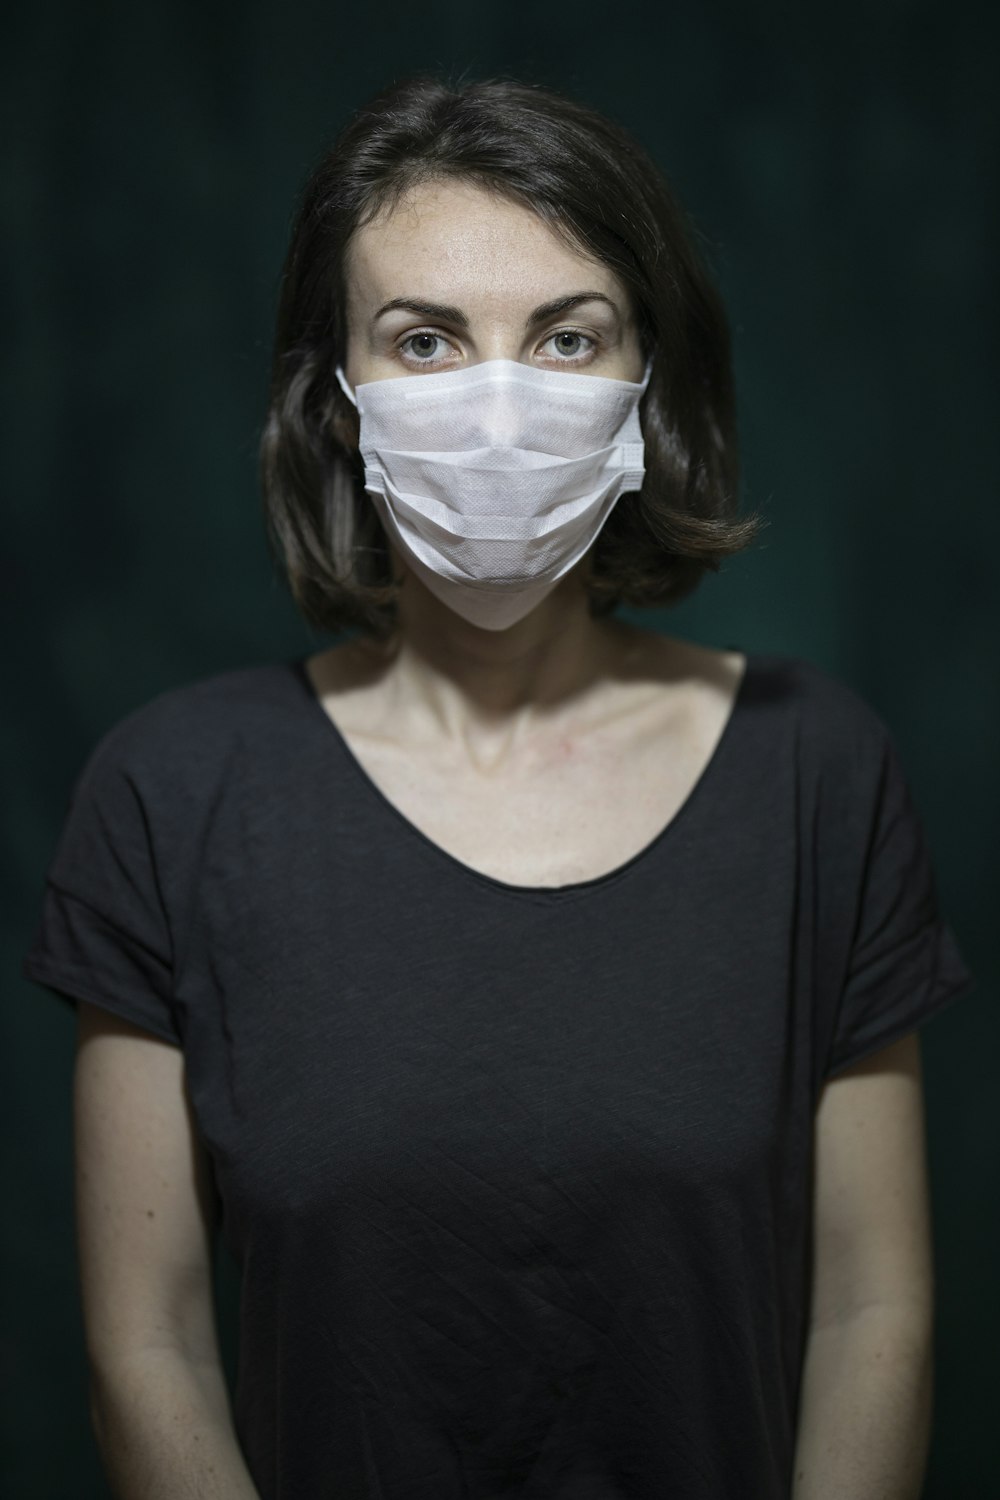 Frau in schwarzem U-Ausschnitt-Hemd mit weißer Gesichtsmaske